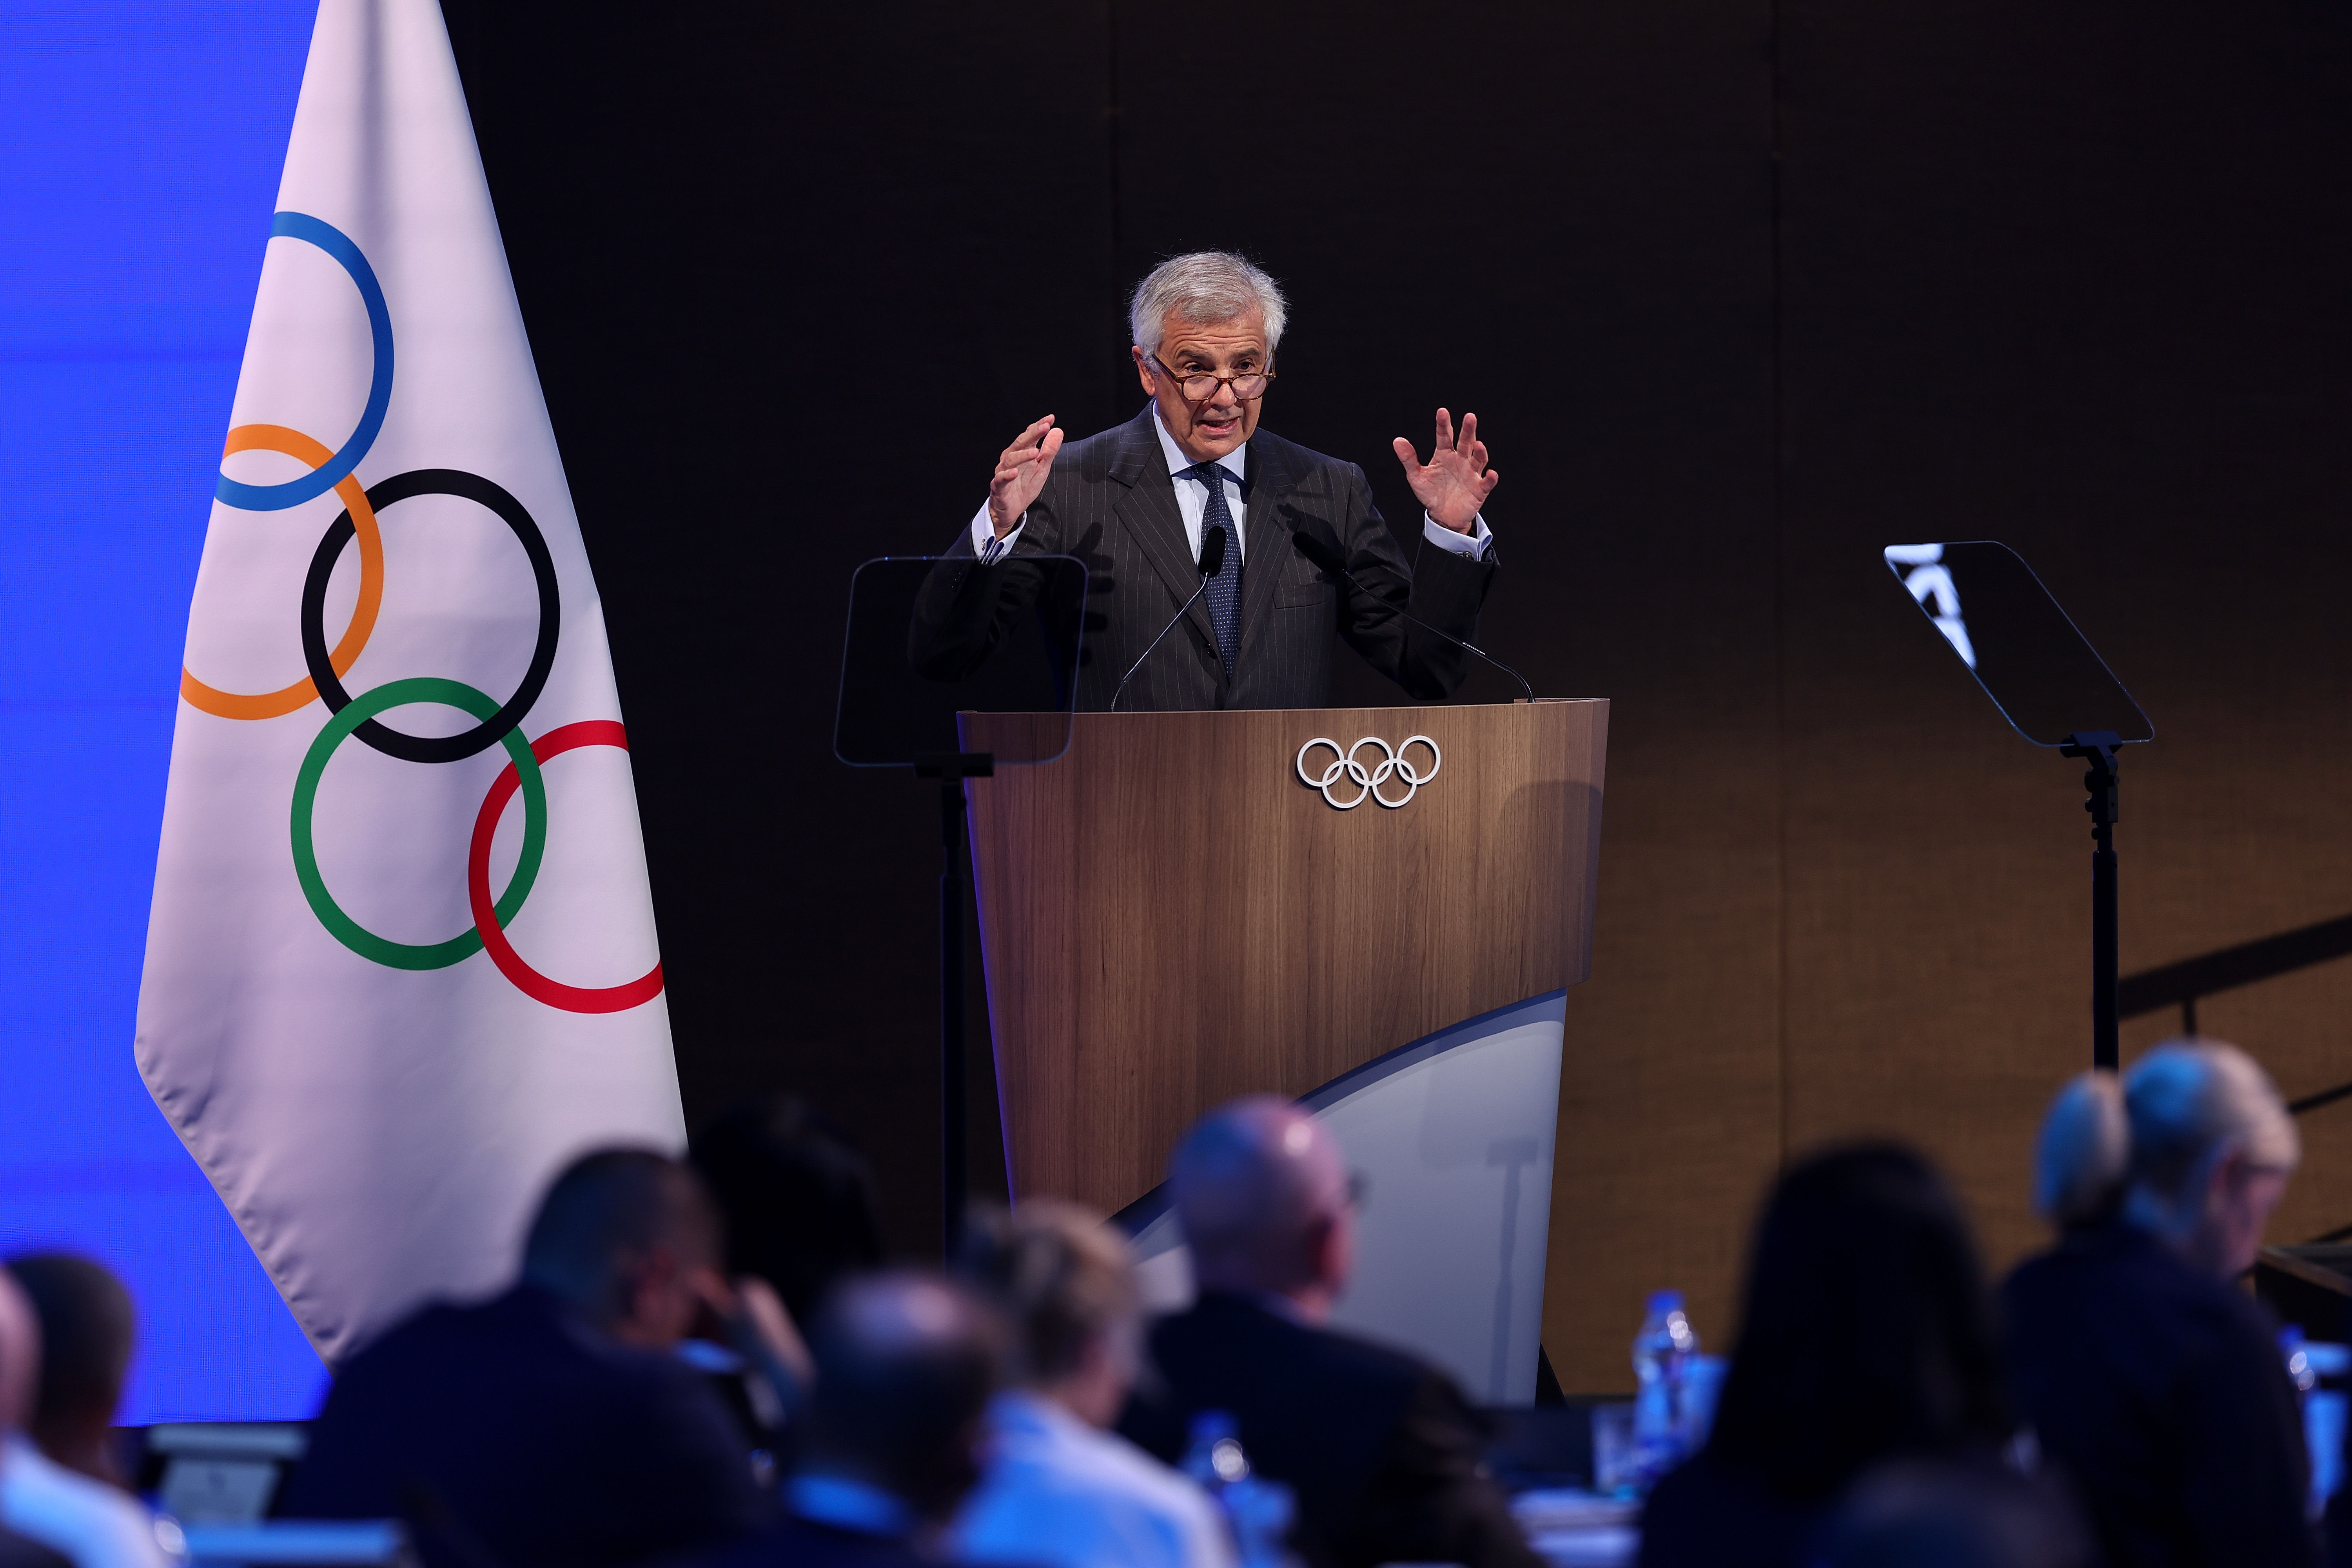 国际奥委会第141次全会进入第二日议程